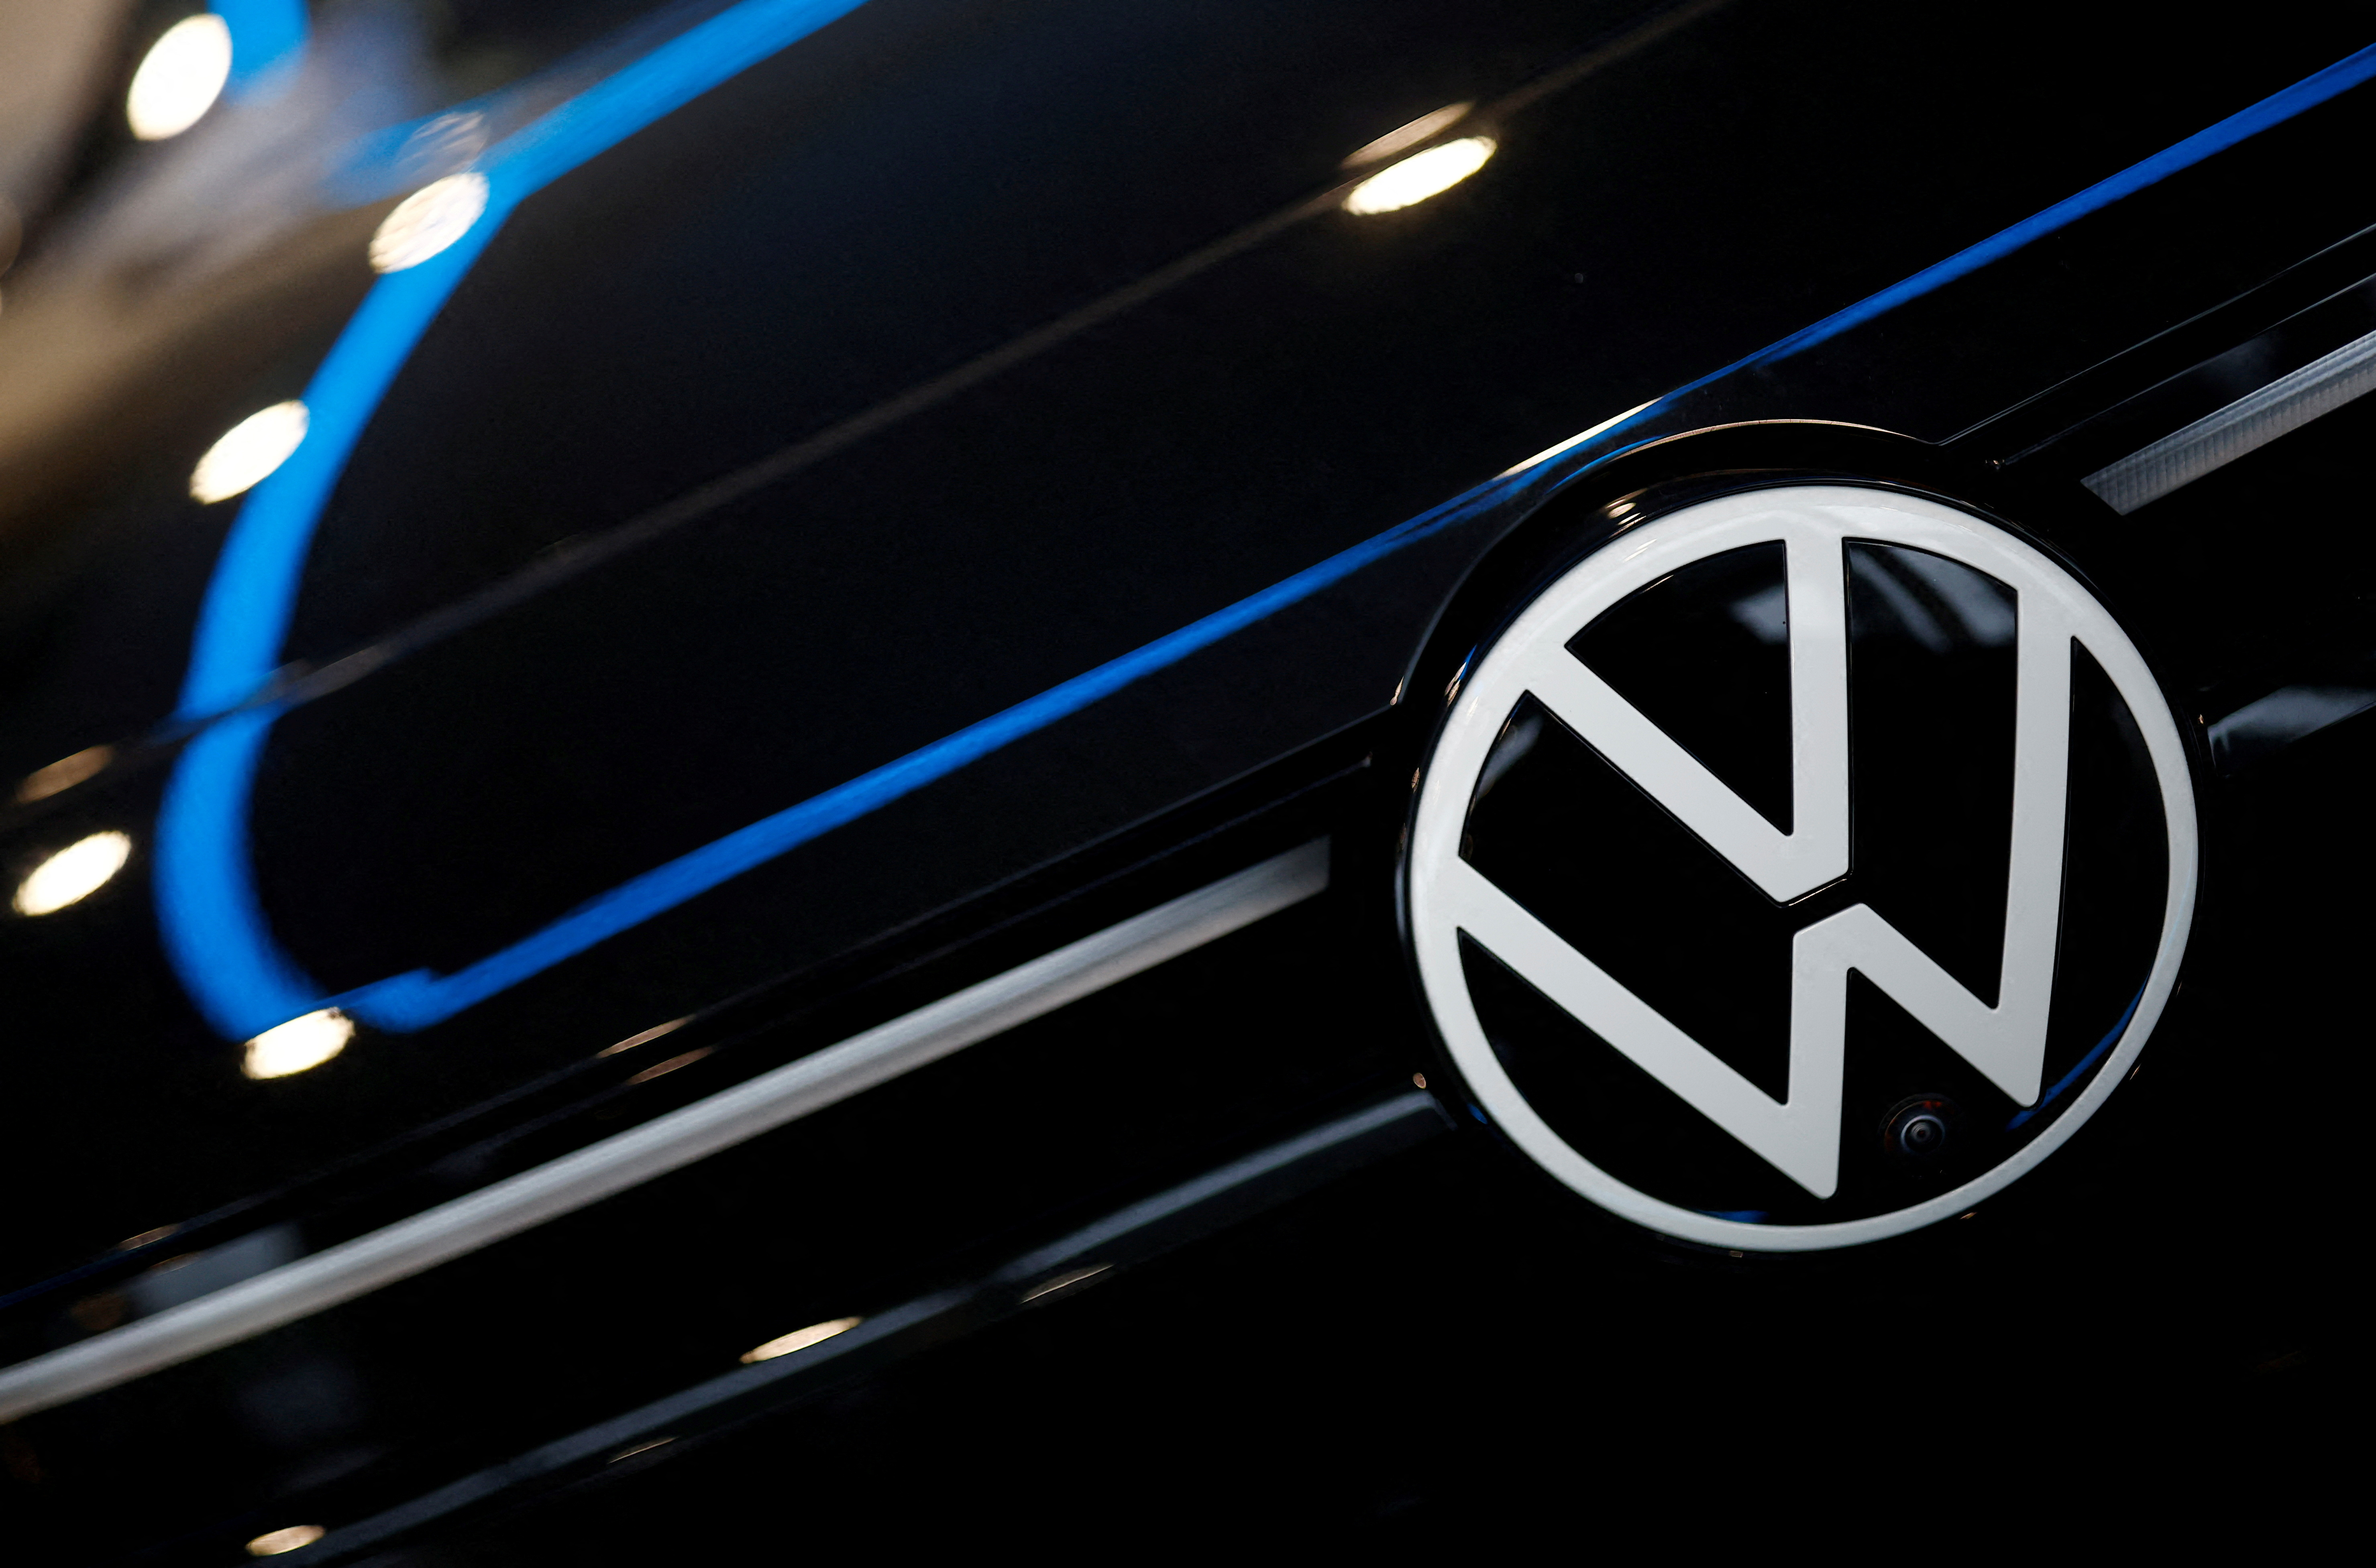 Volkswagen für € 34.990